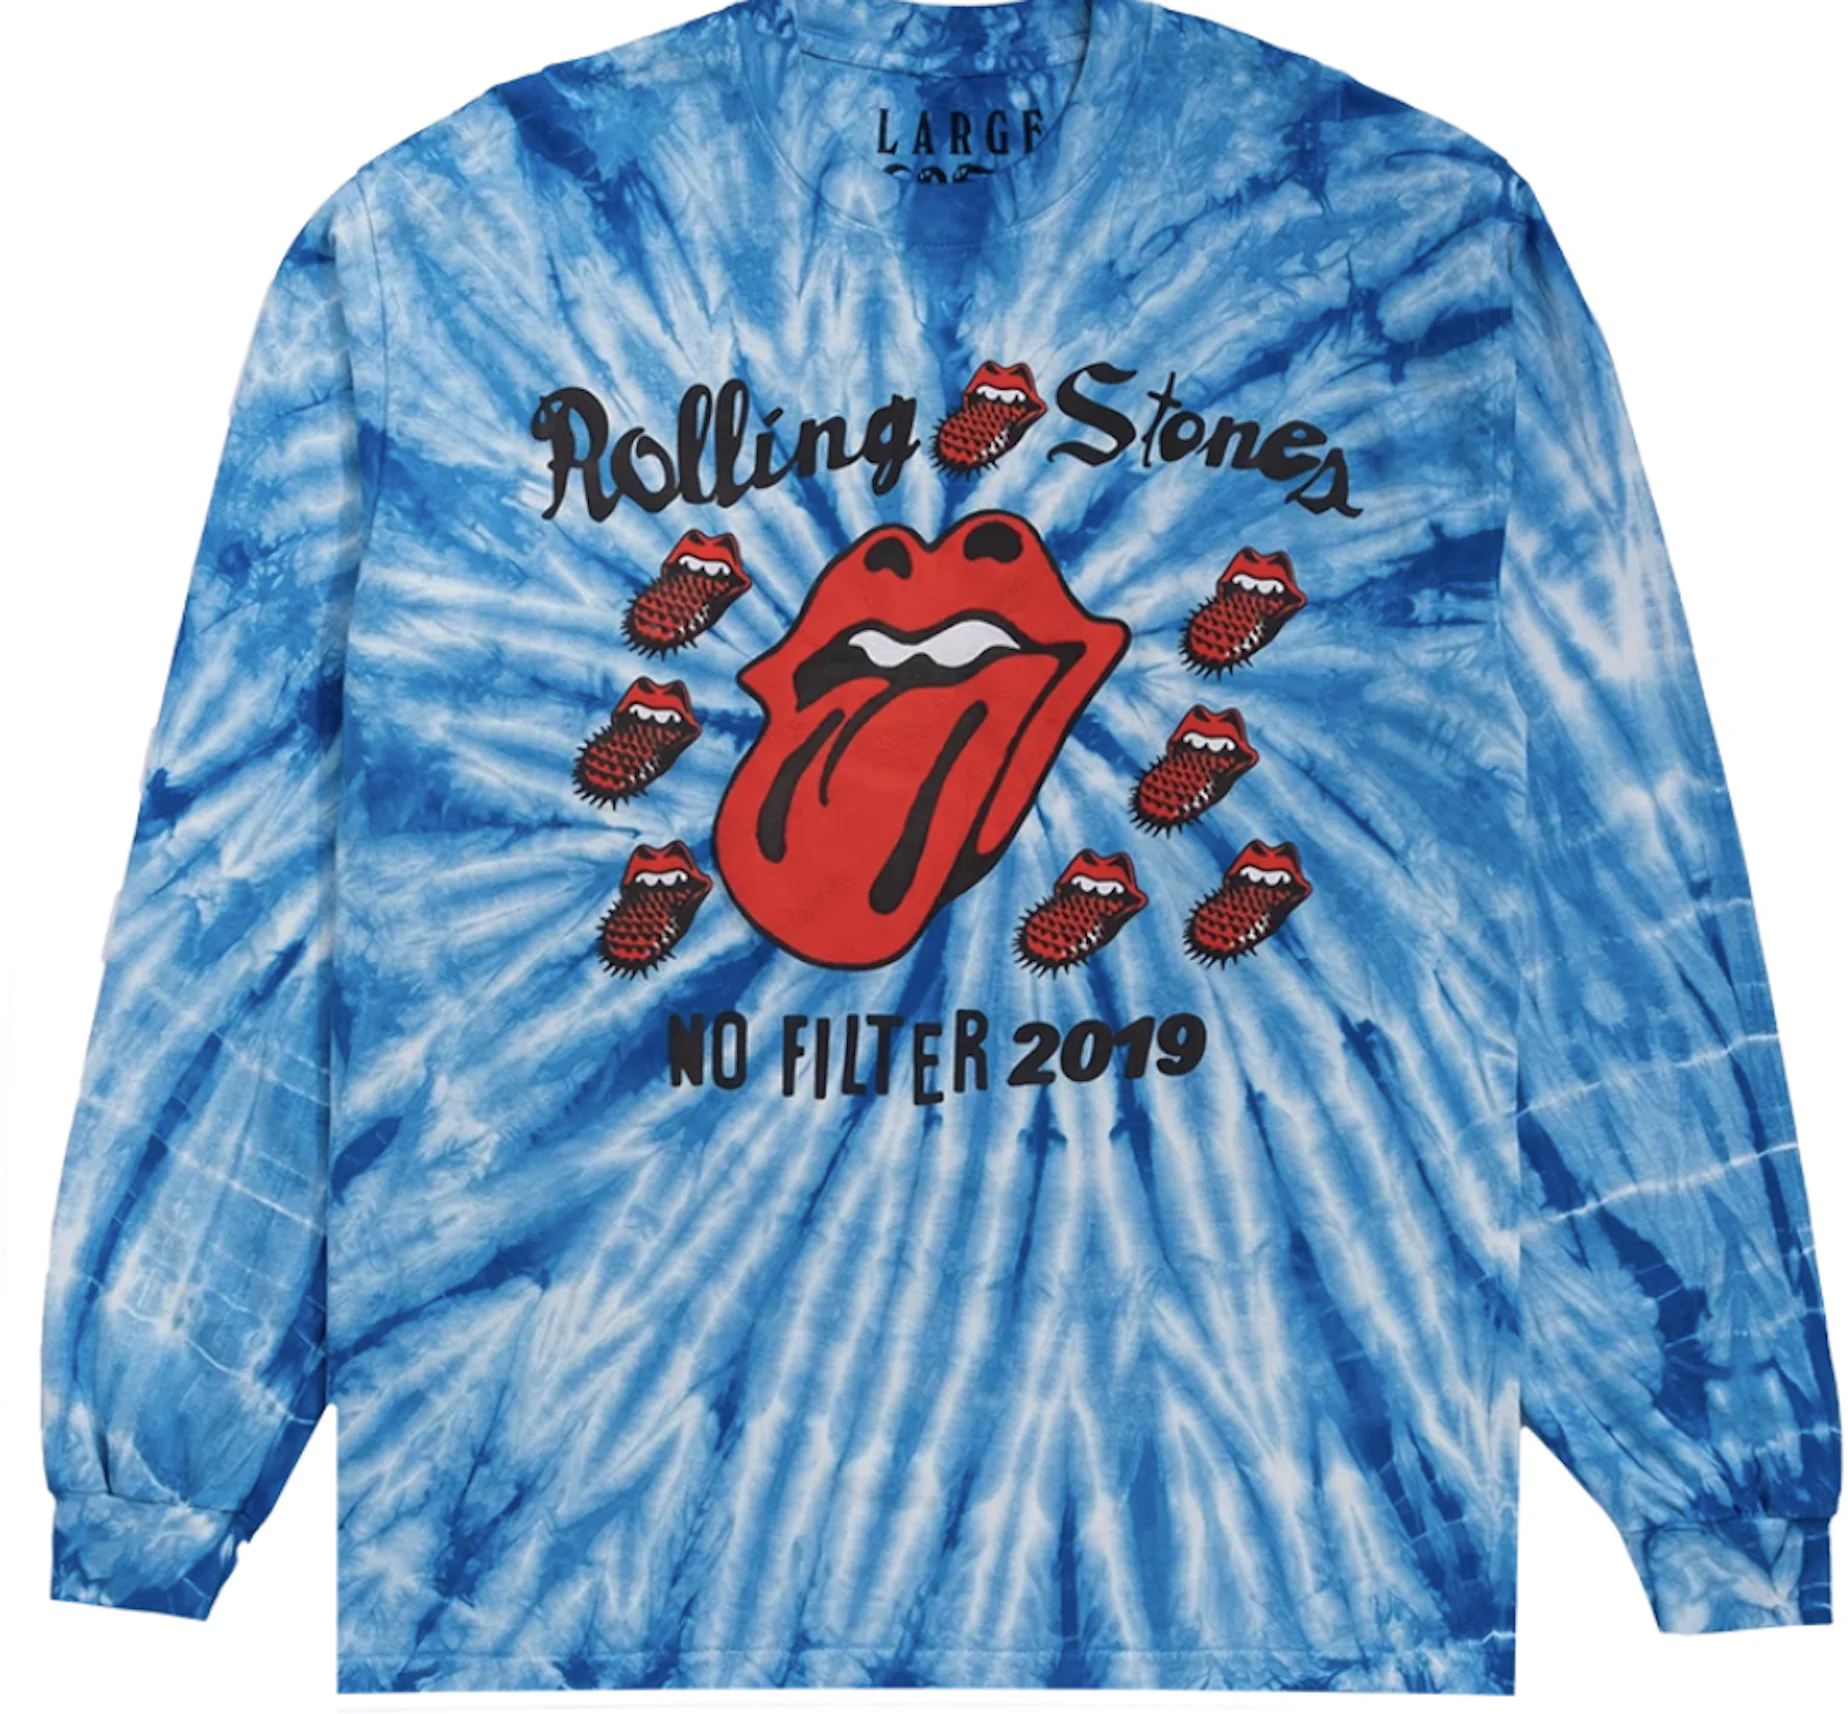 Cactus Plant Flea Market Rolling Stones No Filter Tour L/S T-Shirt Multi